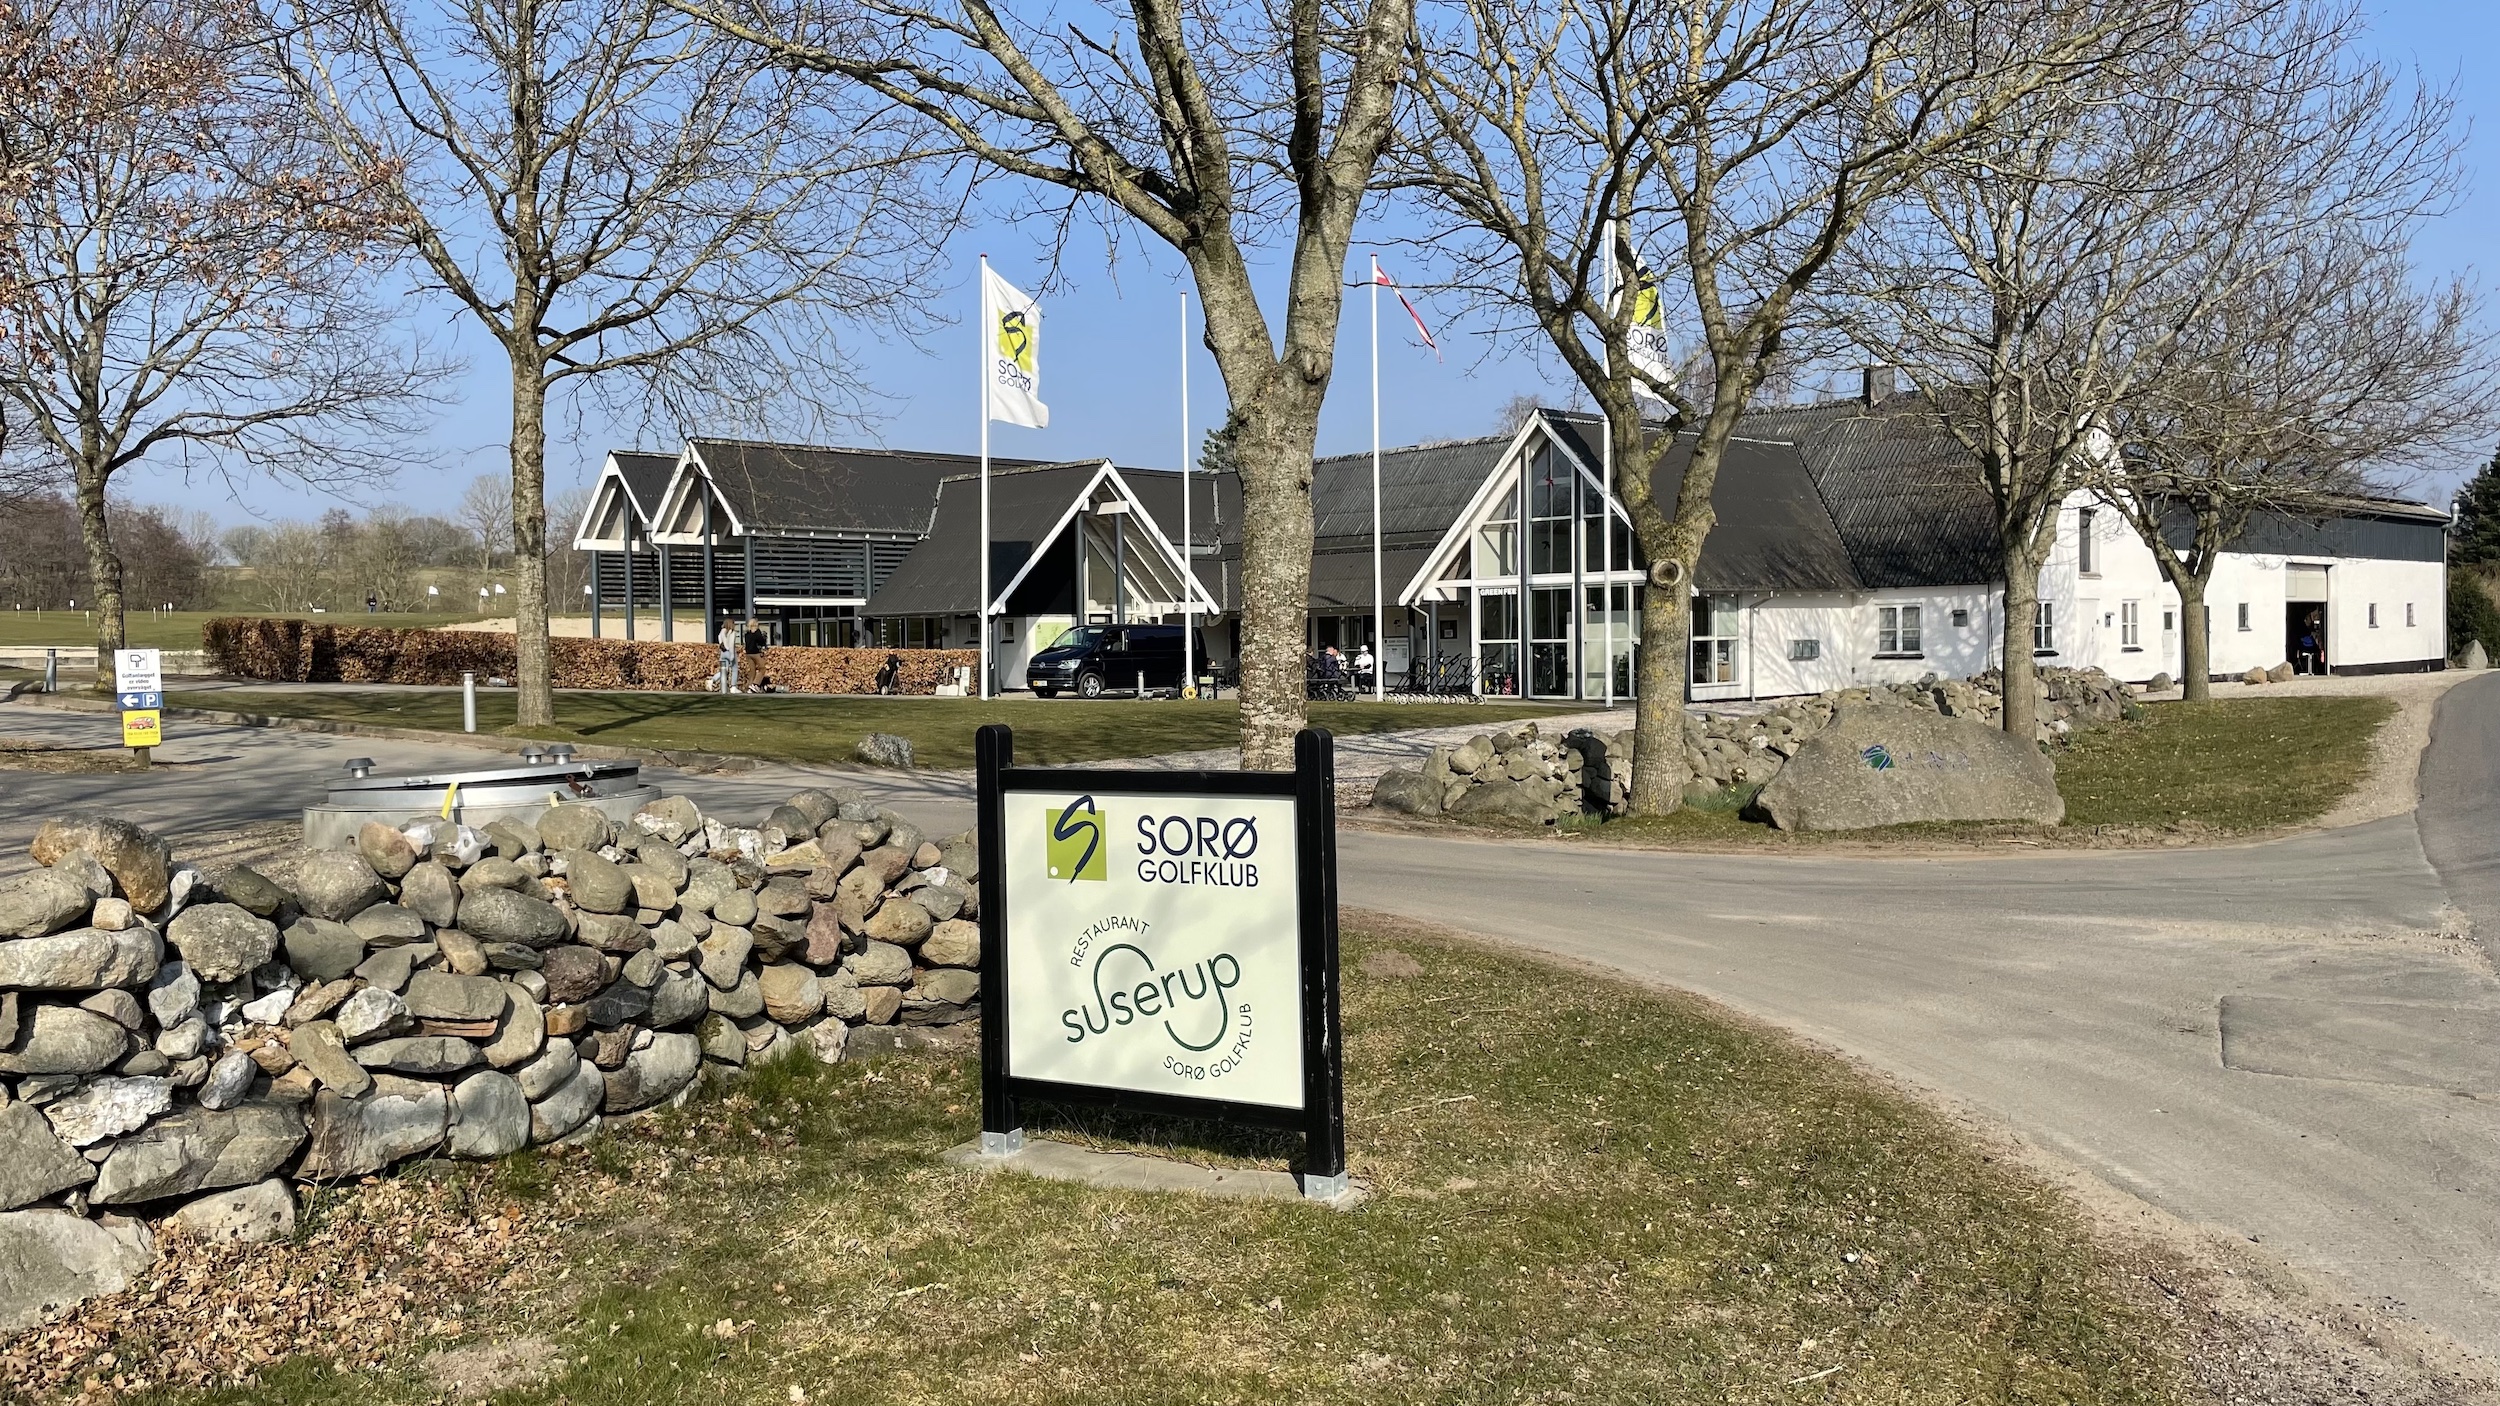 Restaurant Suserup i Sorø Golfklub